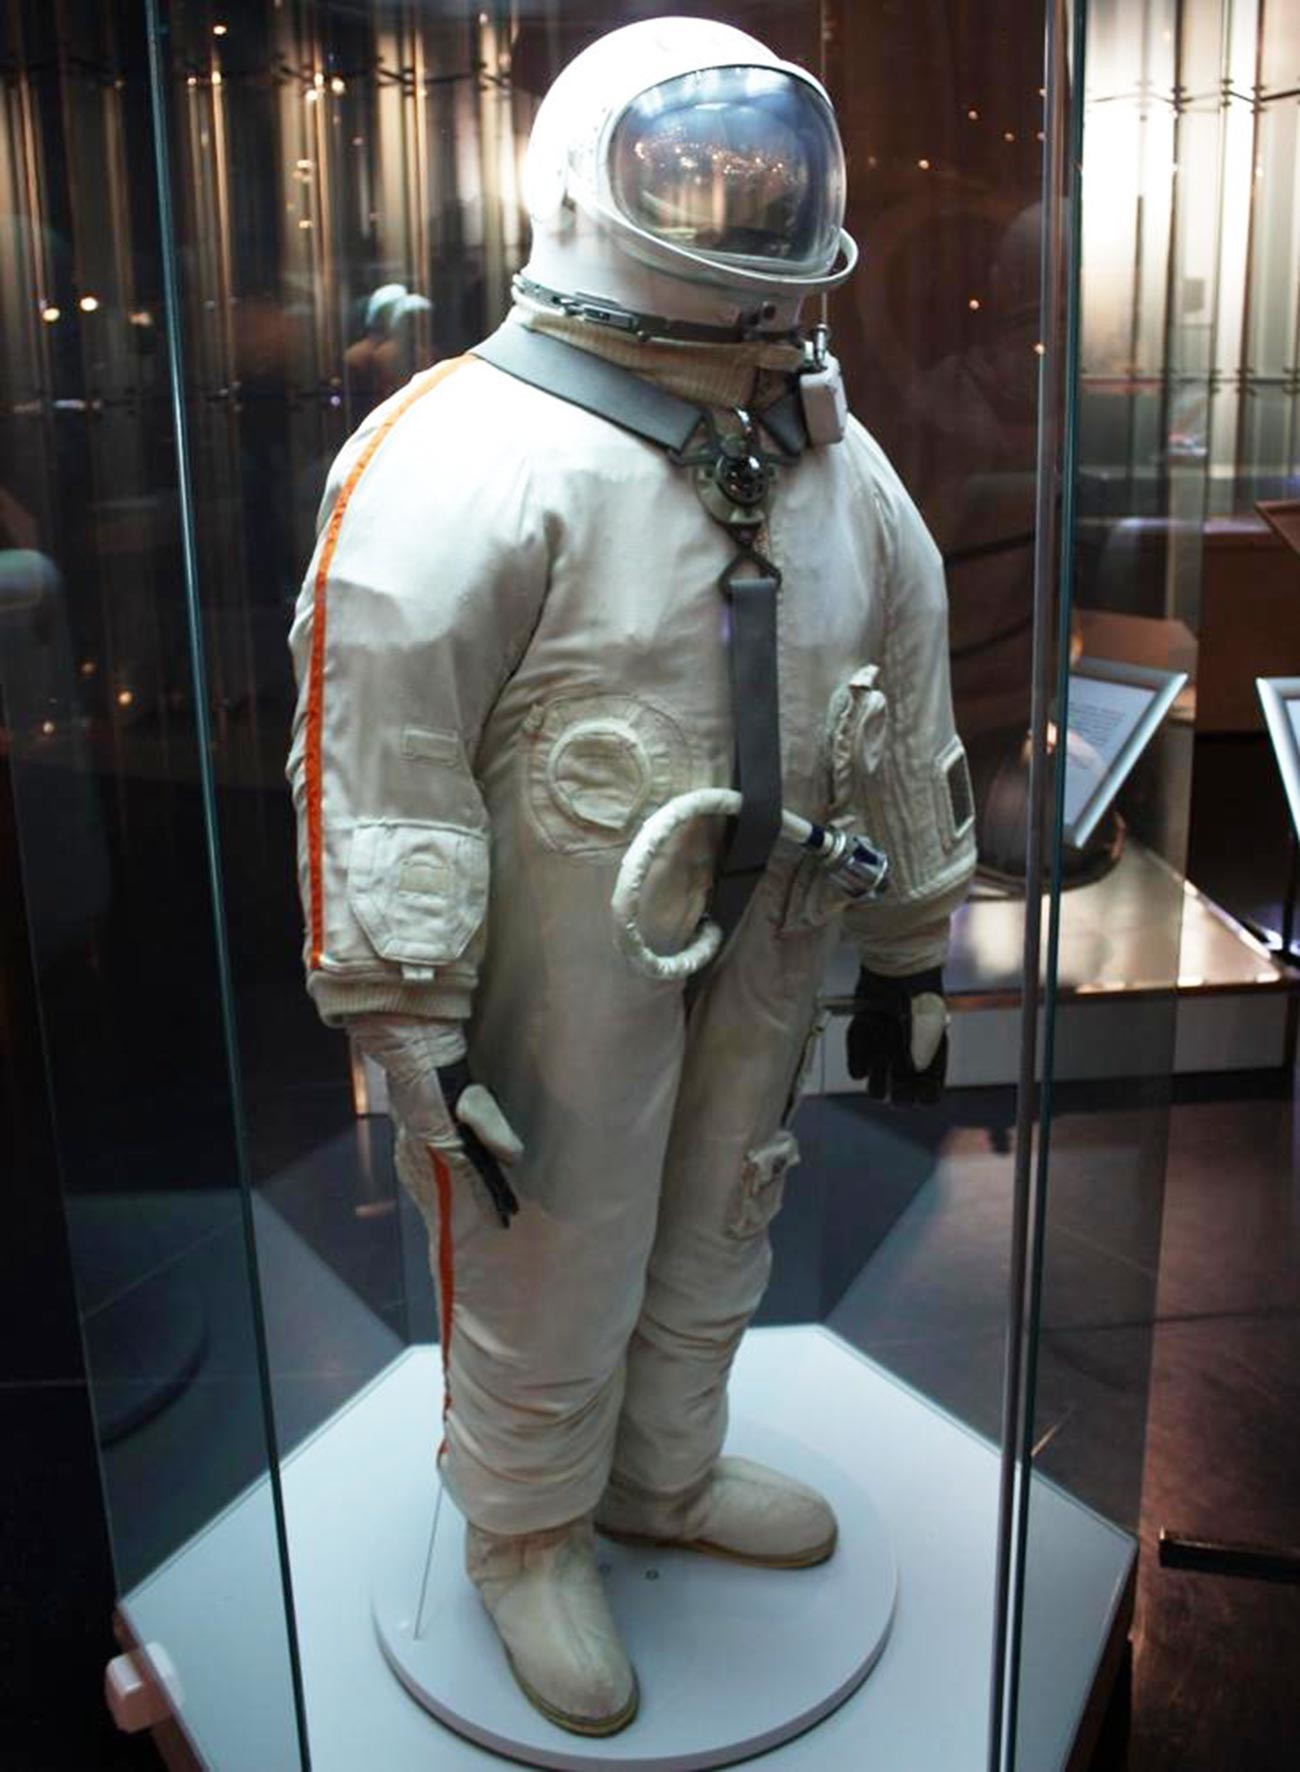 Soviet Spacesuit Fetches $242